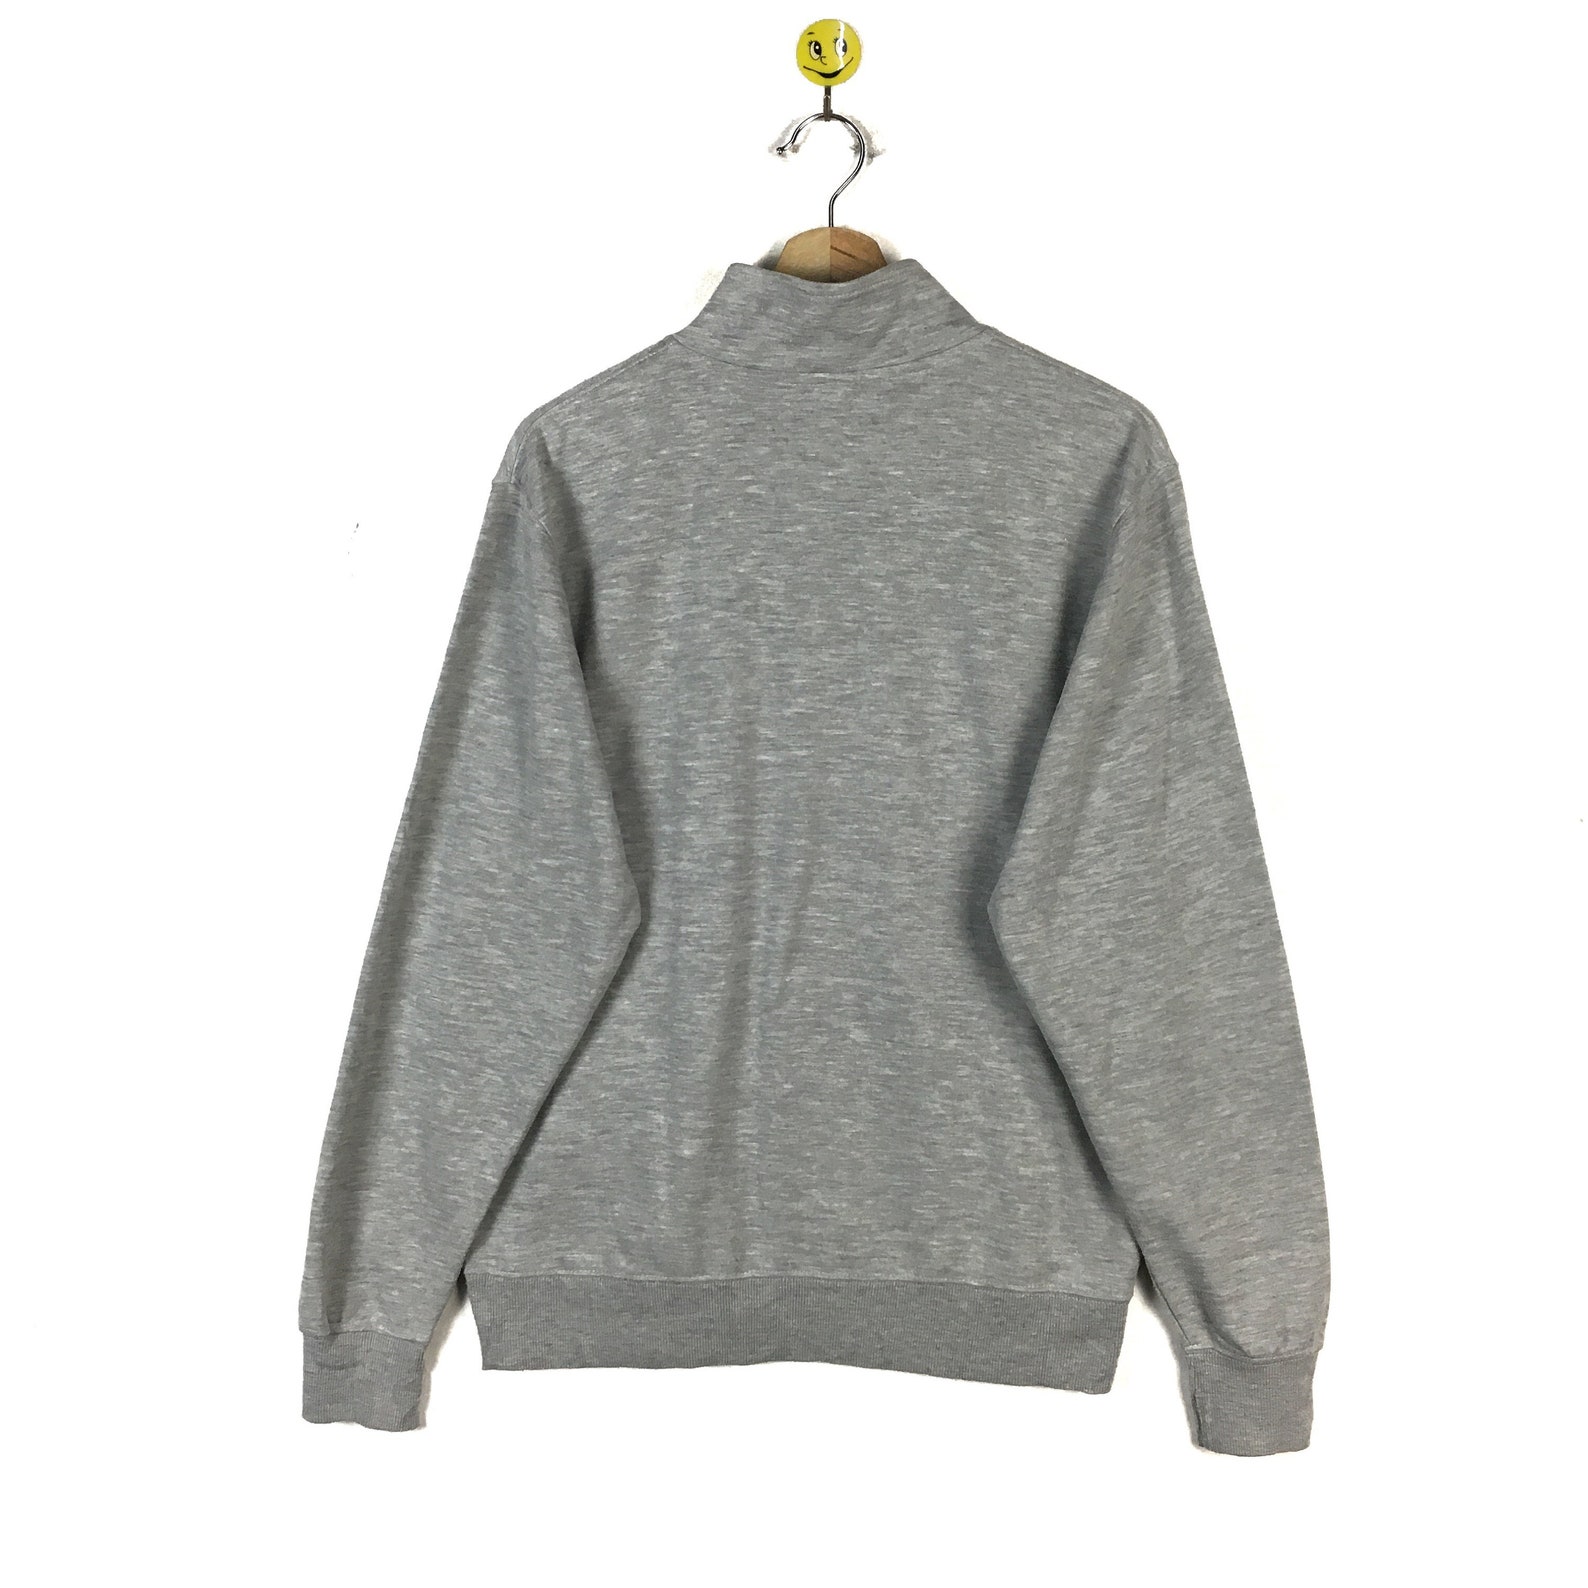 Rare Hang Ten sweatshirt Hang Ten pullover Hang Ten sweater | Etsy